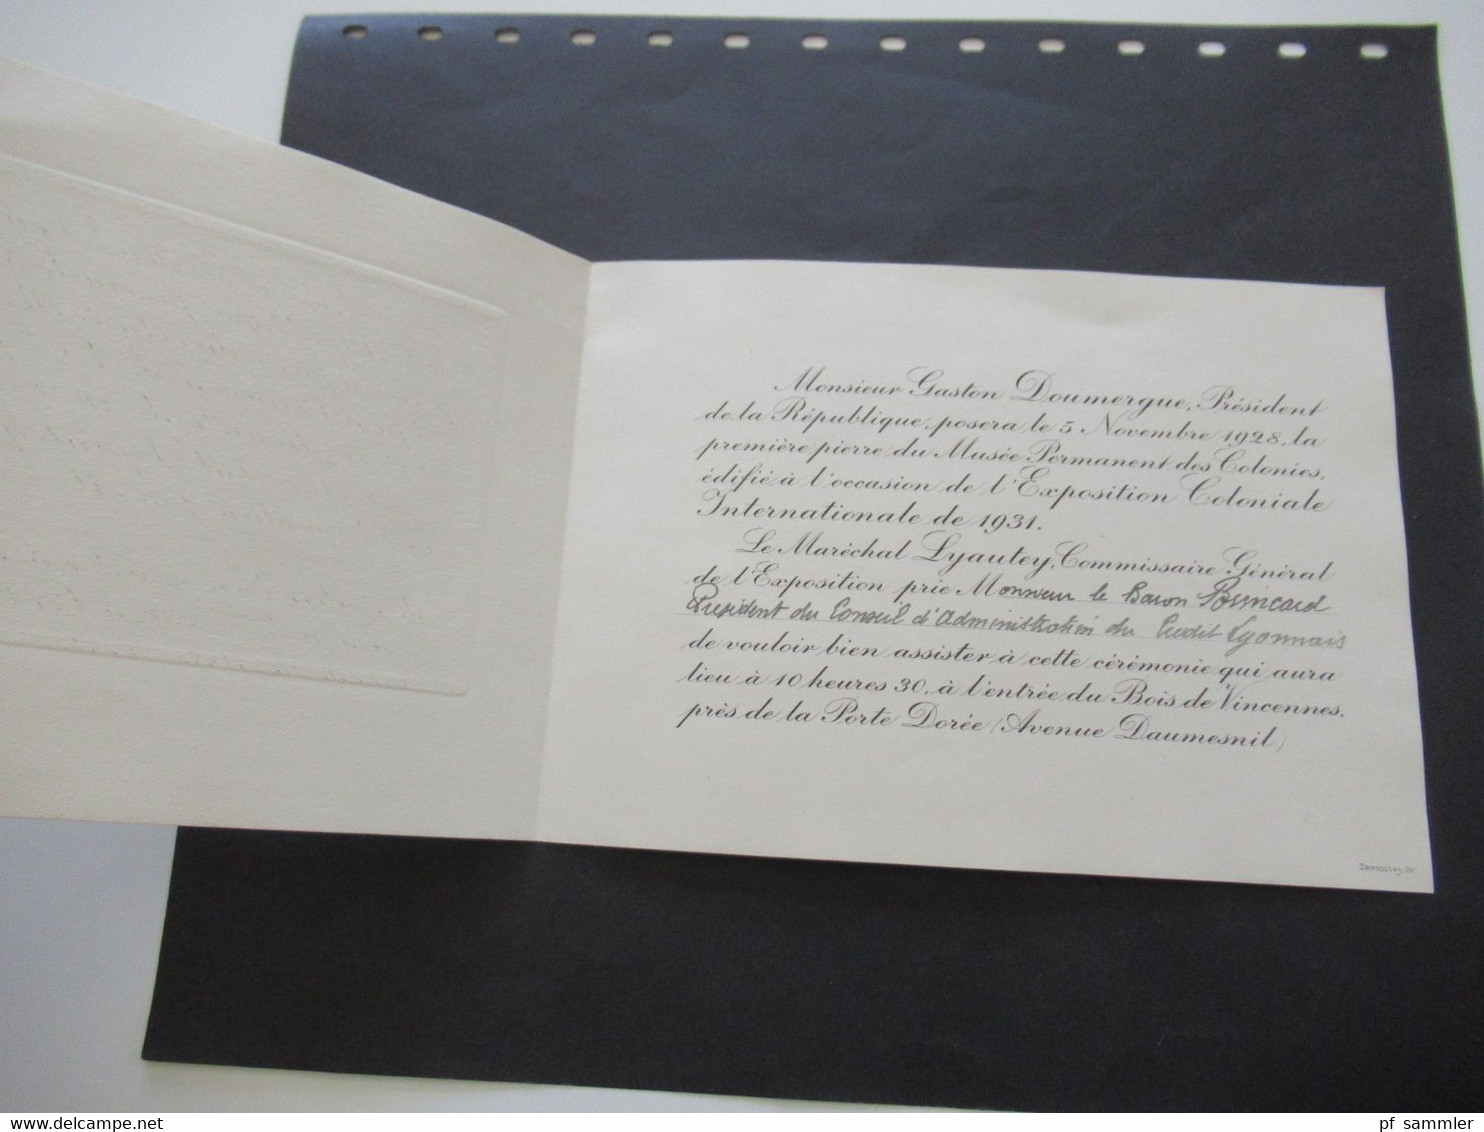 Frankreich 1928 Umschlag mit original Einladungskarte Exposition Coloniale Int. De Paris 1931 Gaston Doumergue President